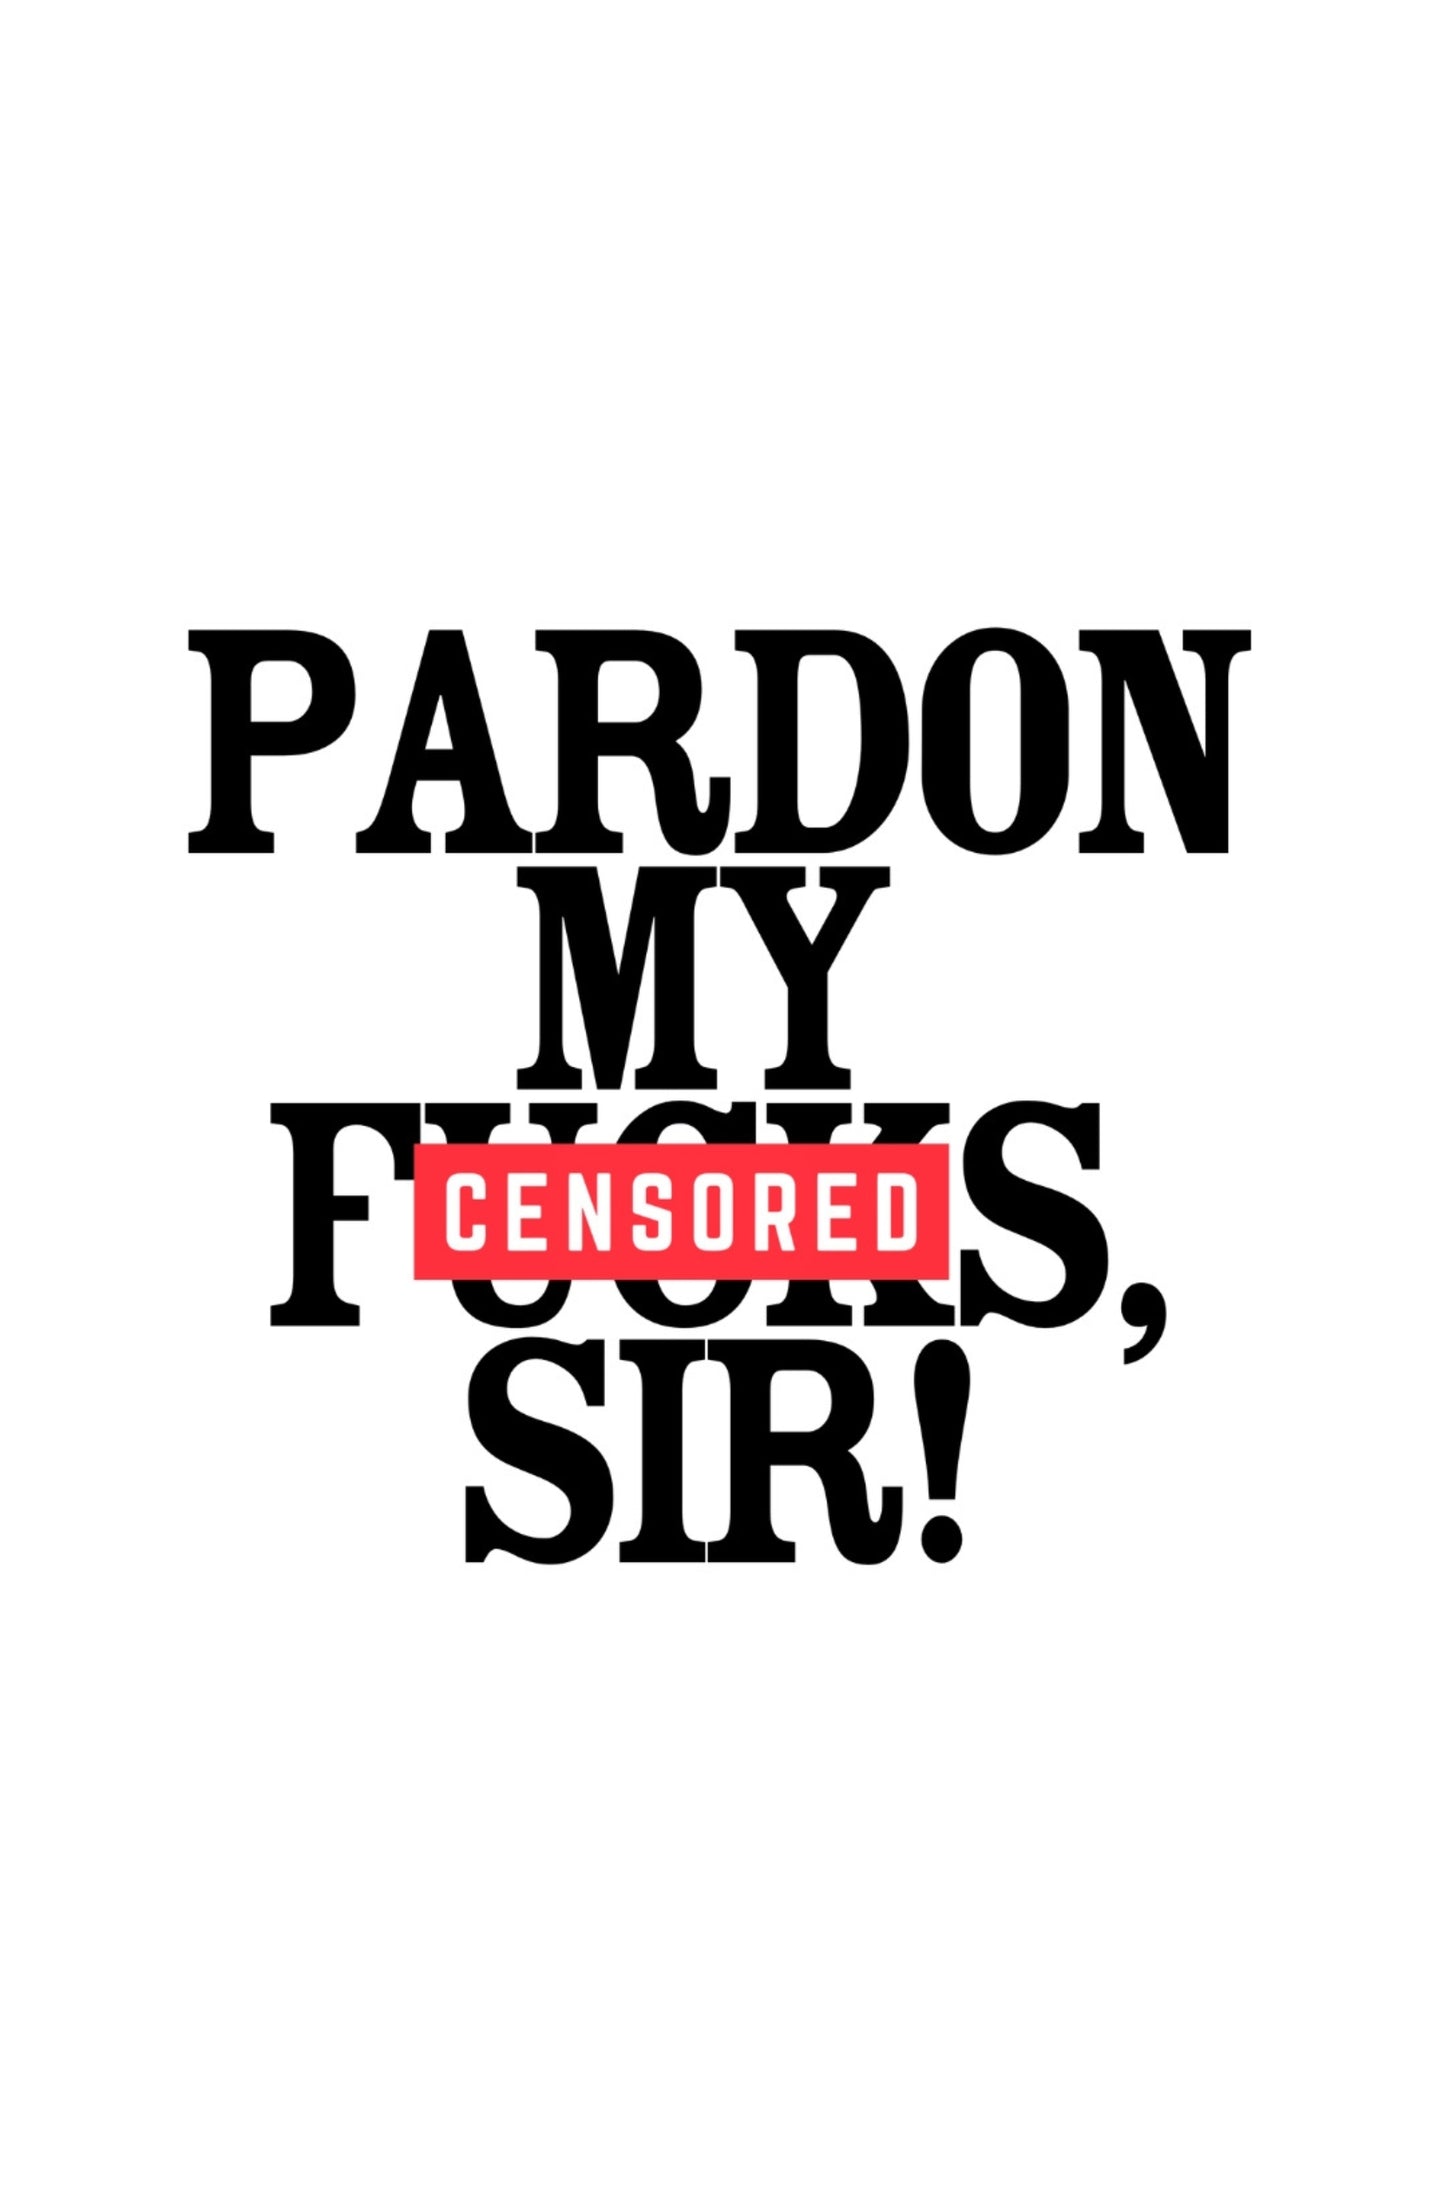 pardon my f*#@s, sir!